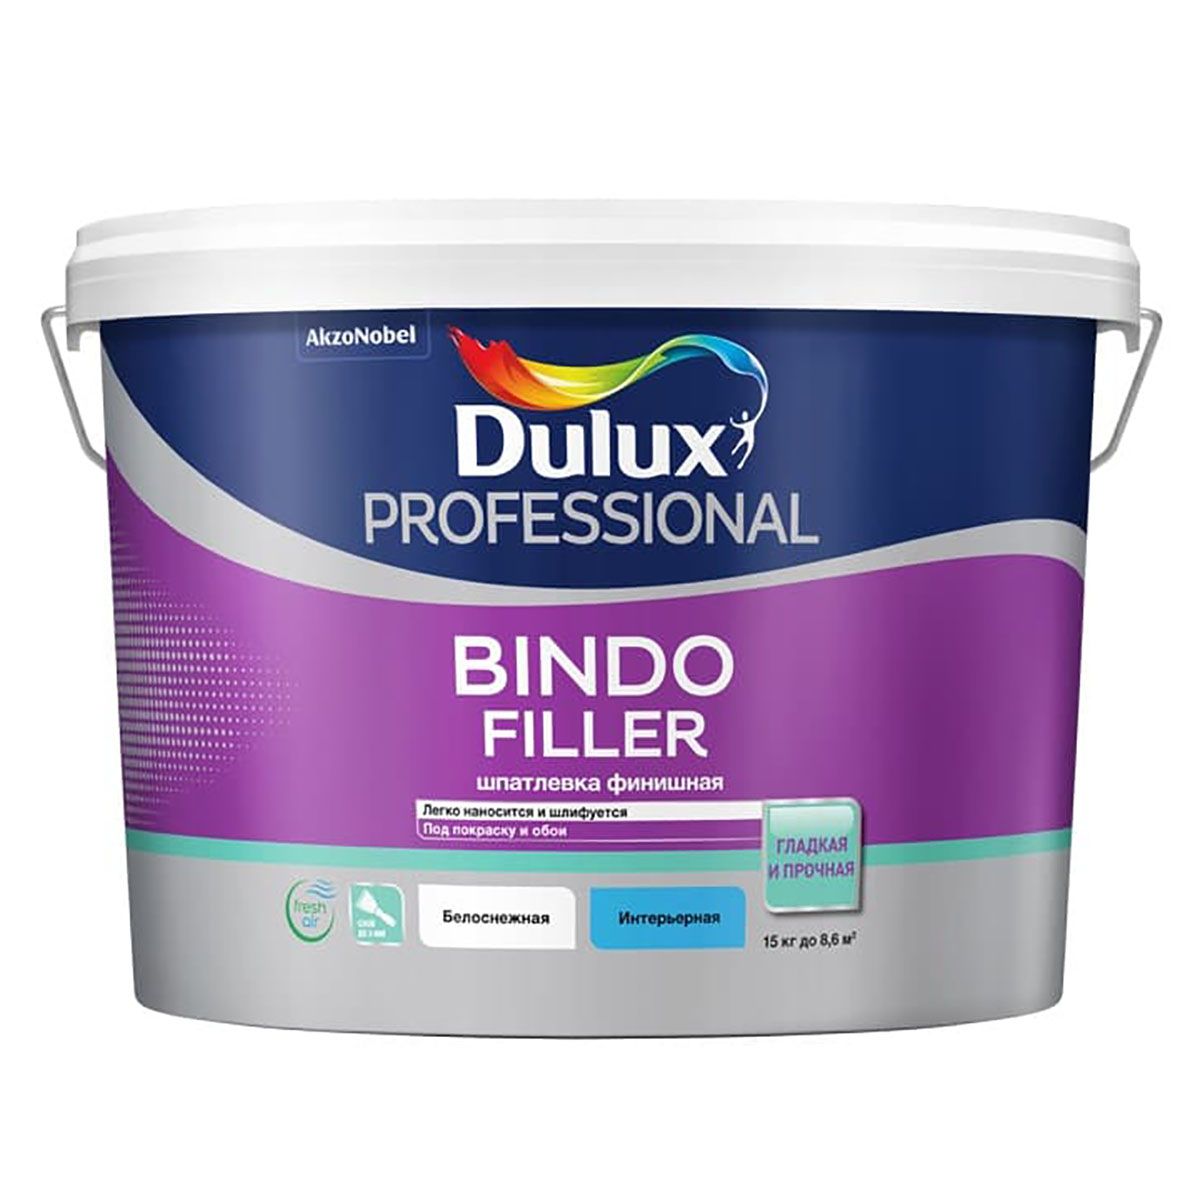 Шпатлевка для стен и потолков Dulux Bindo Filler финишная, 8,6 л финишная шпатлевка ecolux